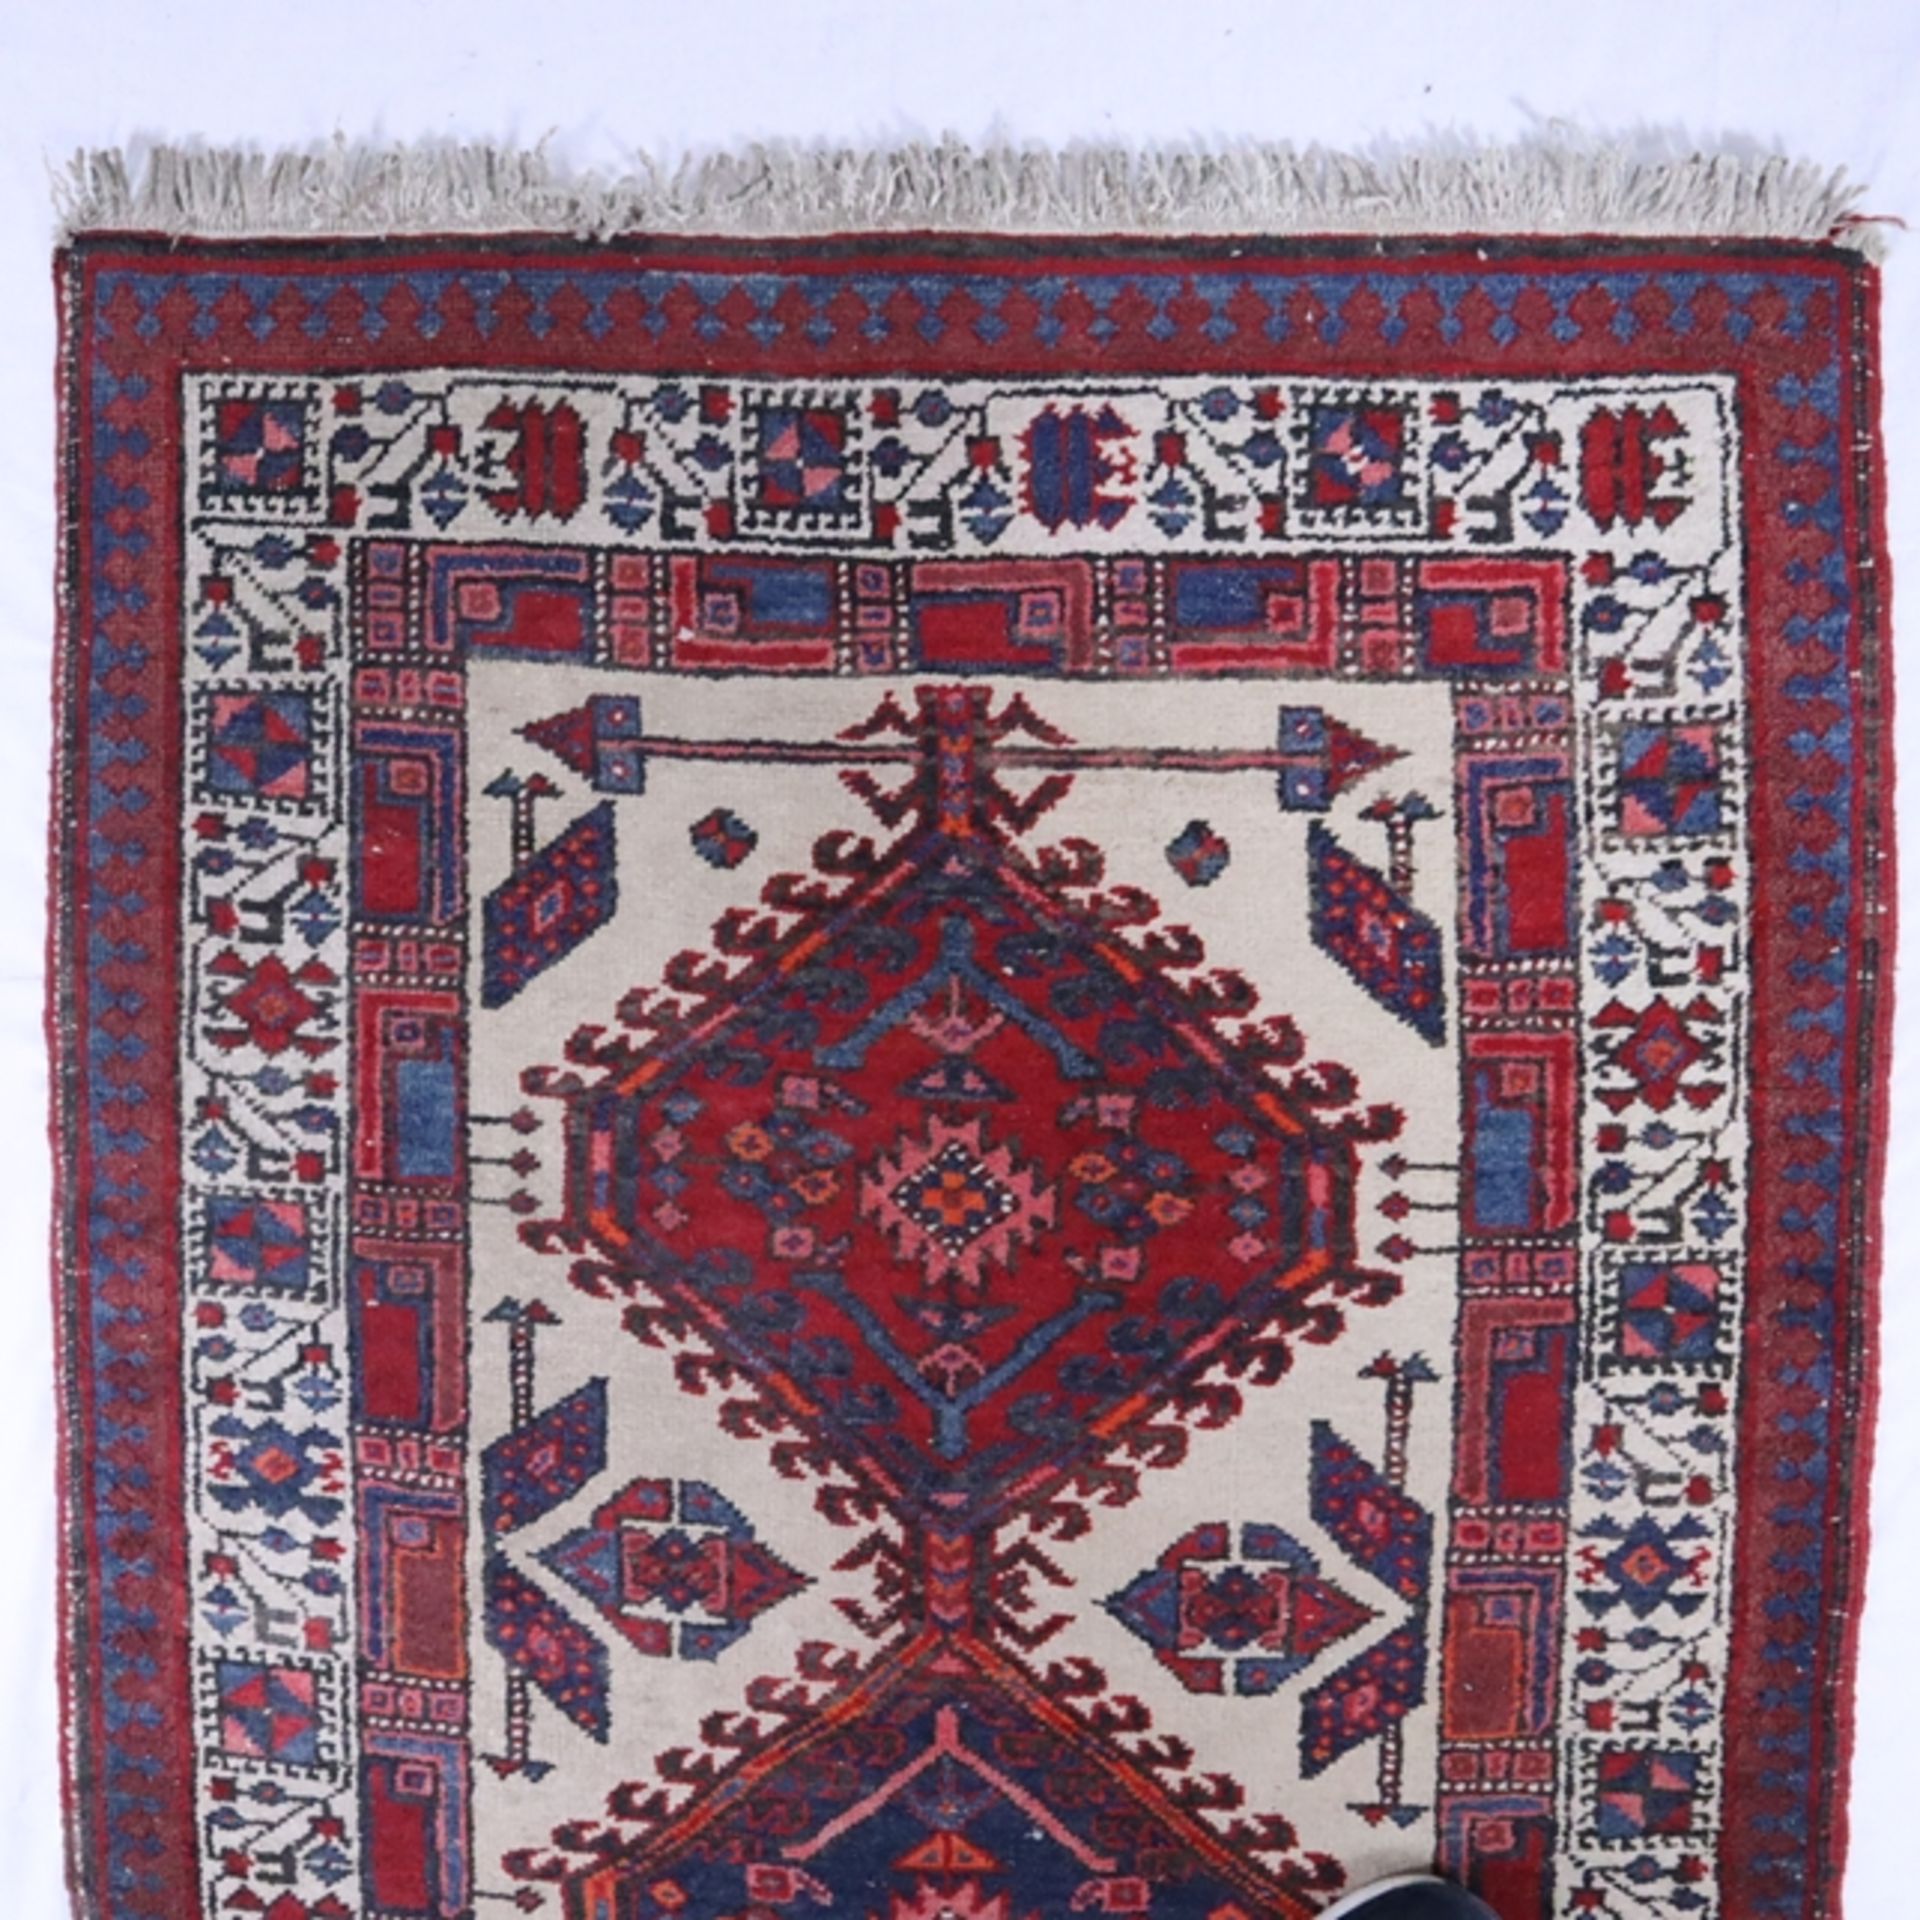 Hamadan - Wolle auf Baumwolle, rot/blau//weiß, Mittelfeld mit drei Medaillons, Gebrauchsspuren, tei - Bild 2 aus 7